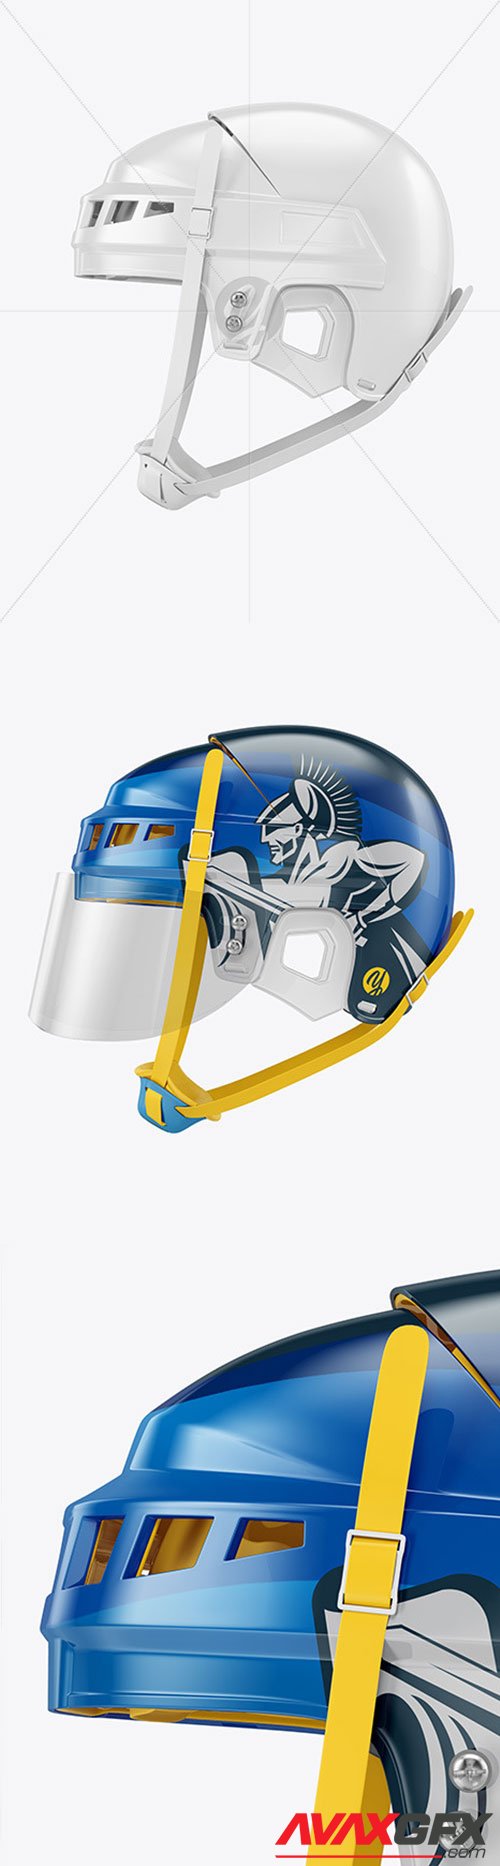 Hockey Helmet Mockup 62096